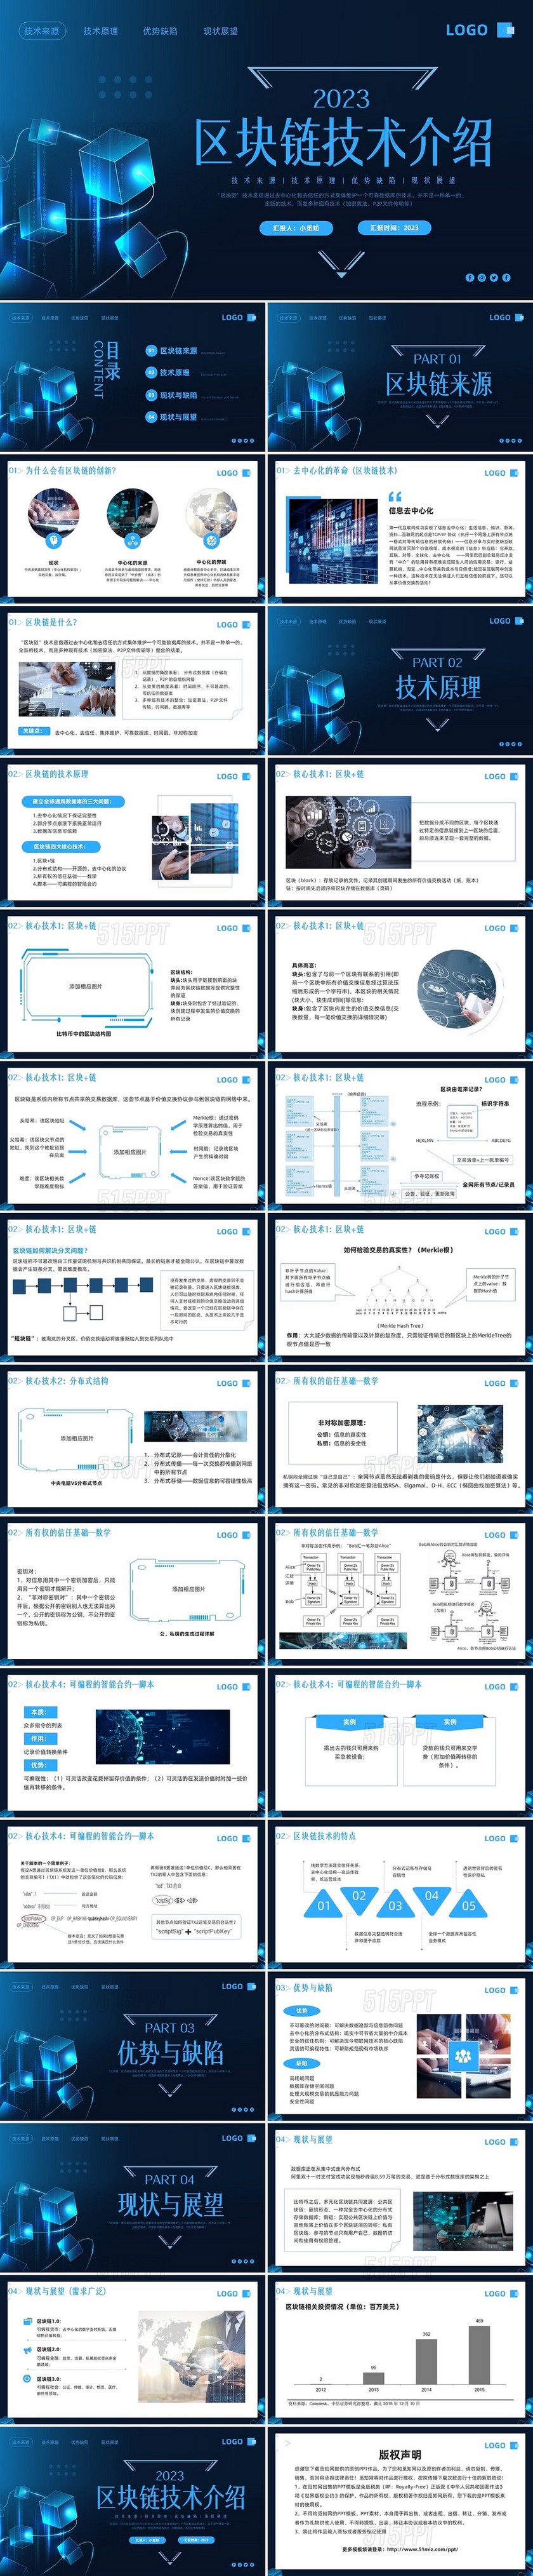 蓝色简约区块链技术介绍PPT模板宣传PPT动态PPT